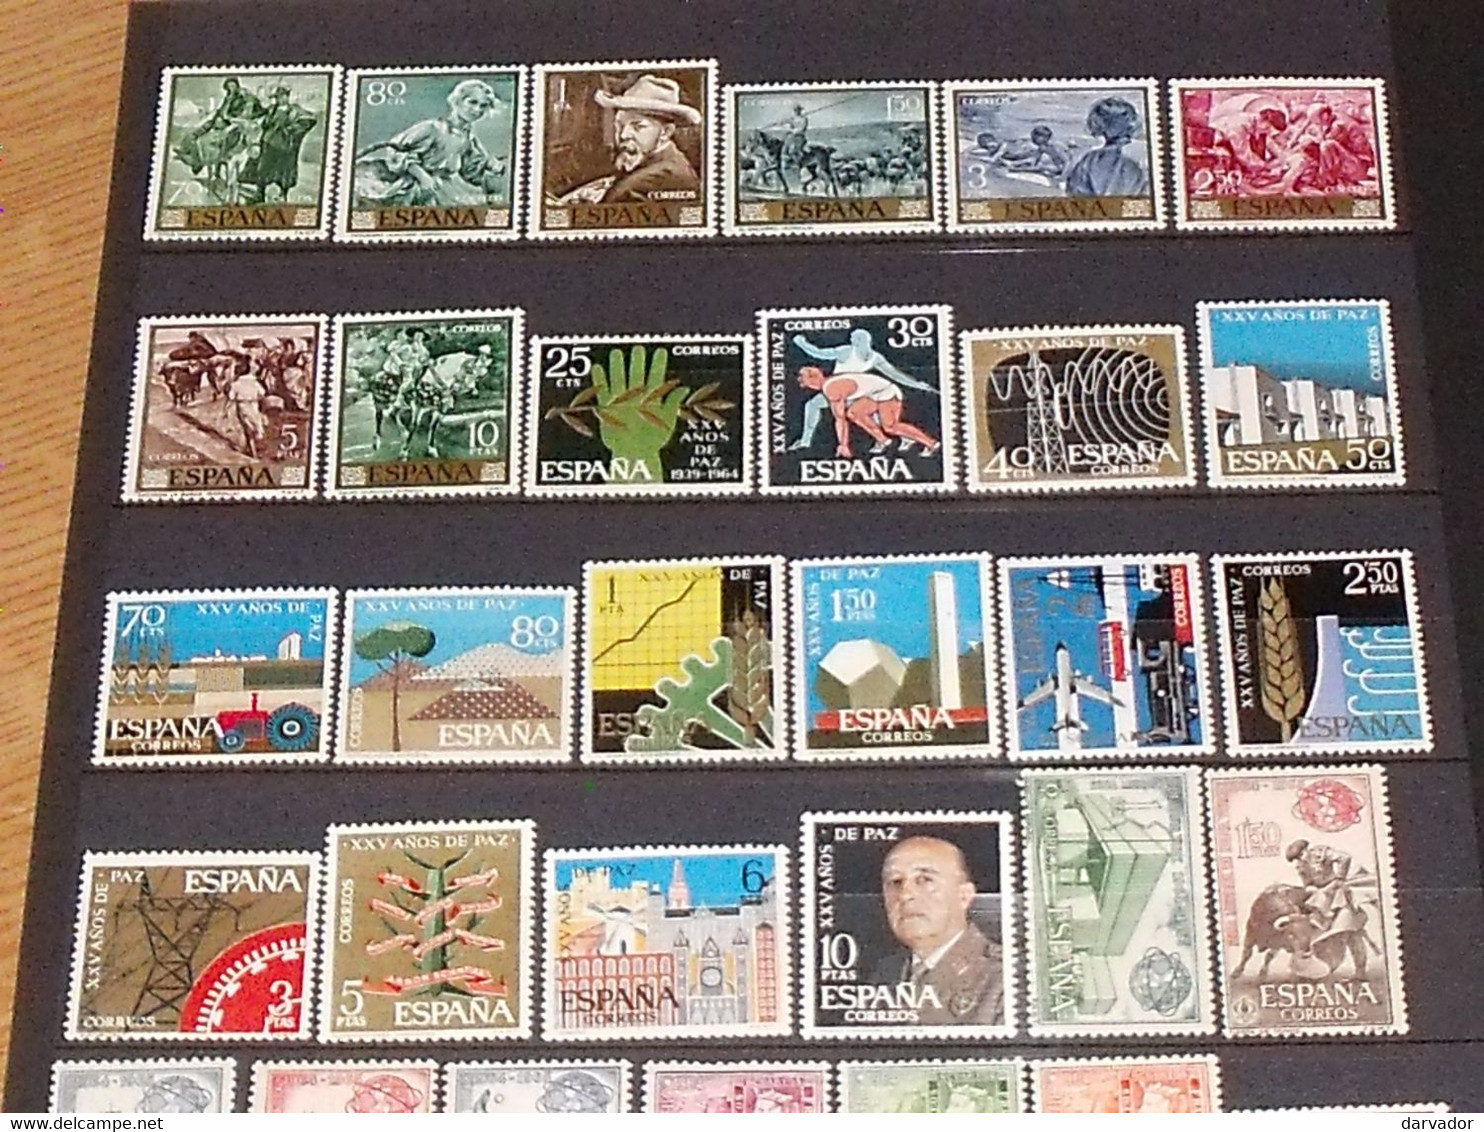 (ESP1) ESPAGNE / album  de 800 timbres et 4 blocs tous neuf ** MNH (aucun double ;  divers sujets thématique )  SUPERBE